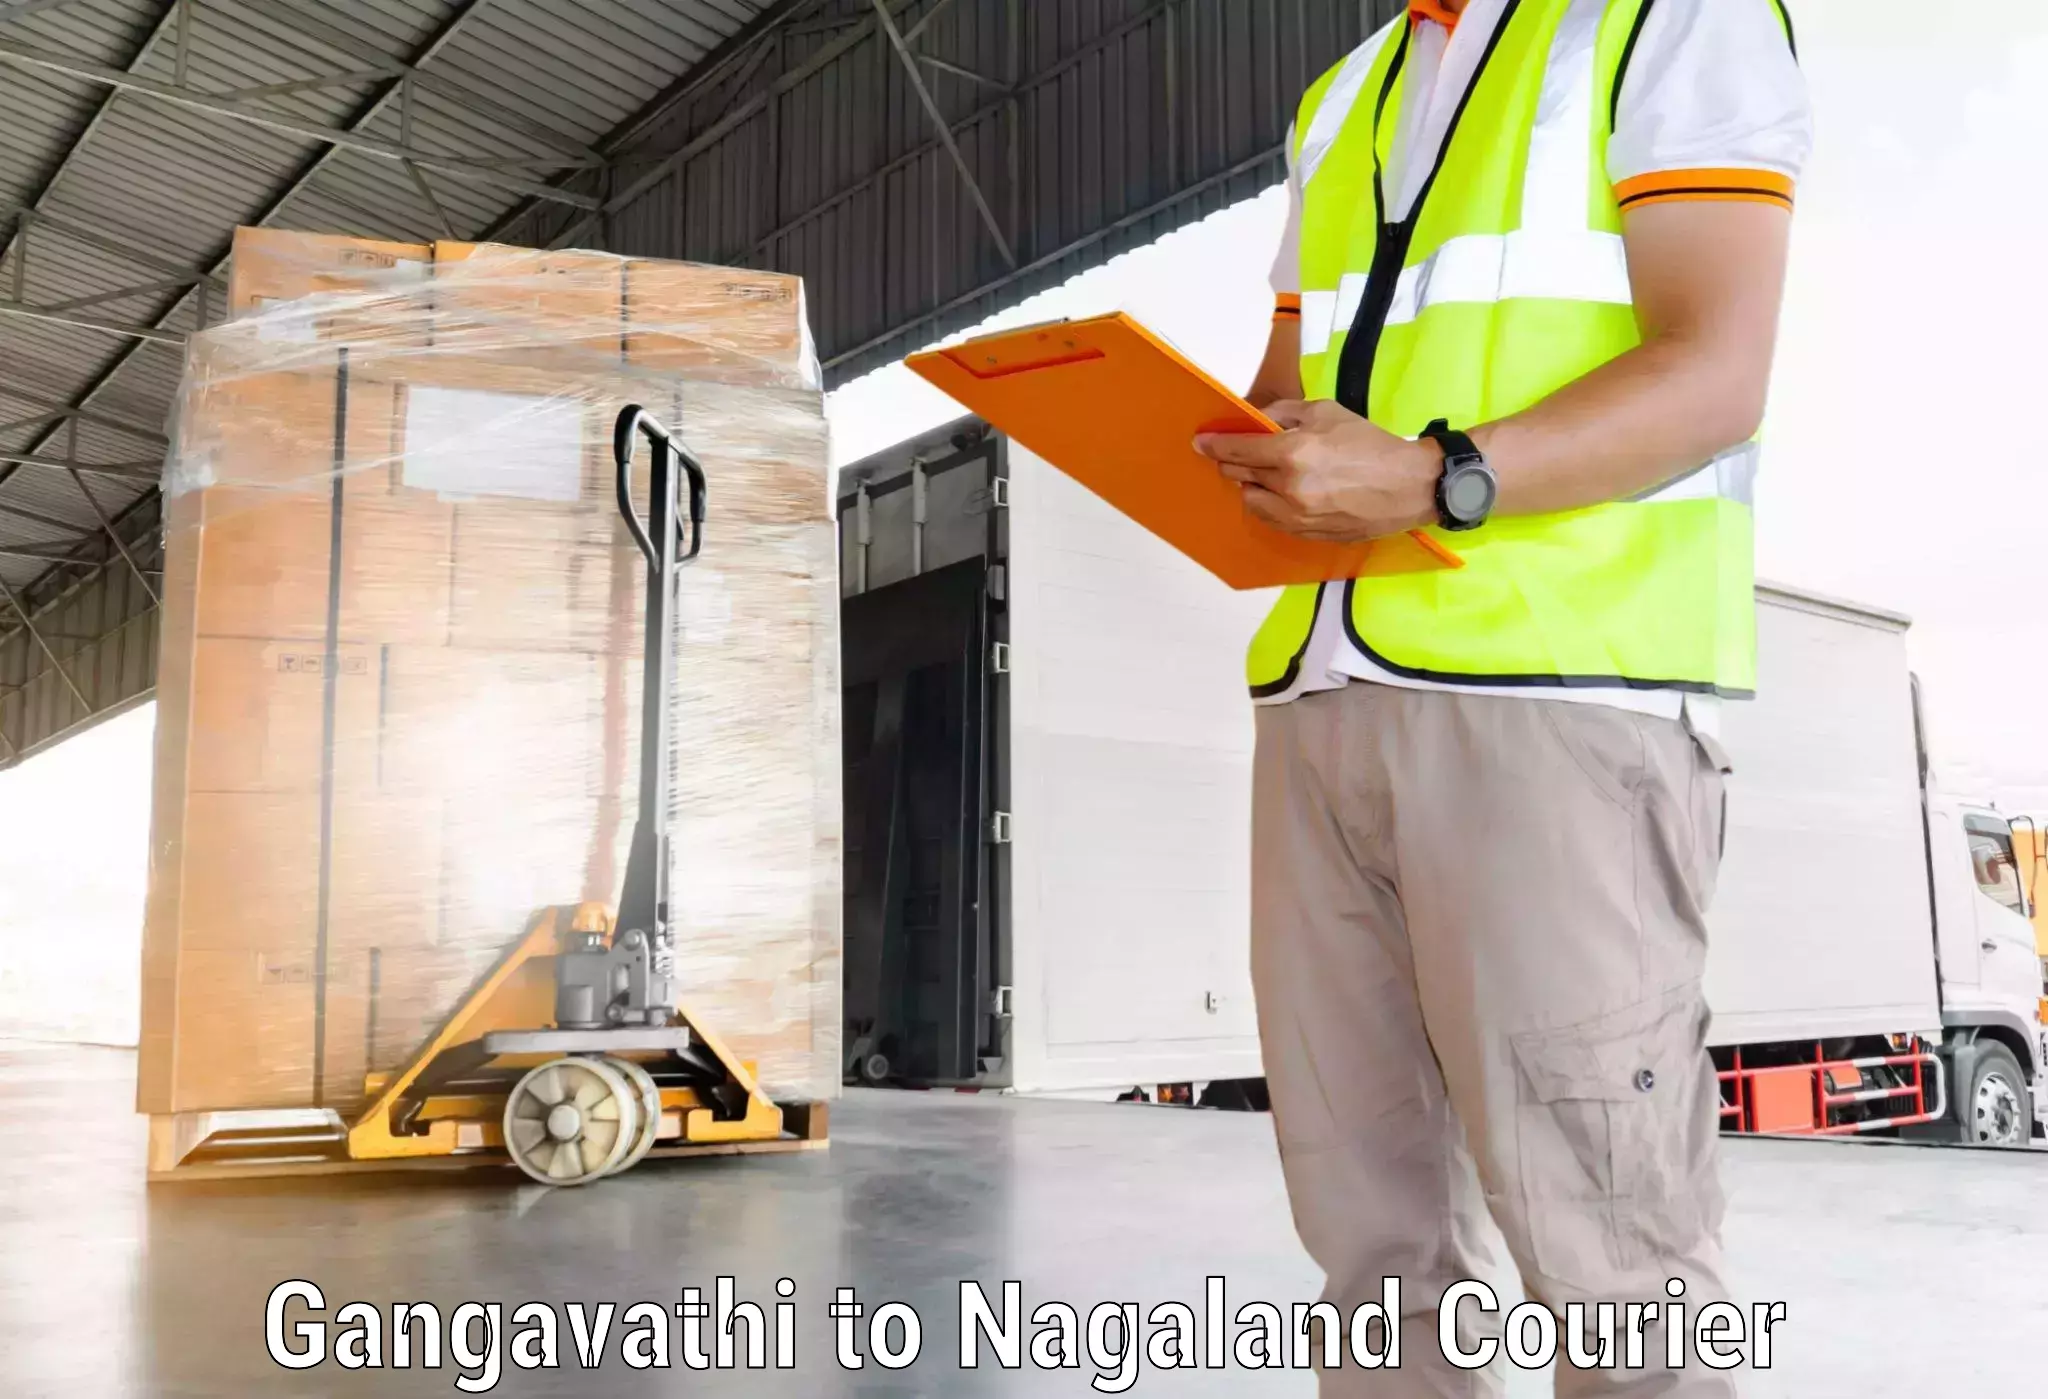 Affordable parcel service Gangavathi to Chumukedima